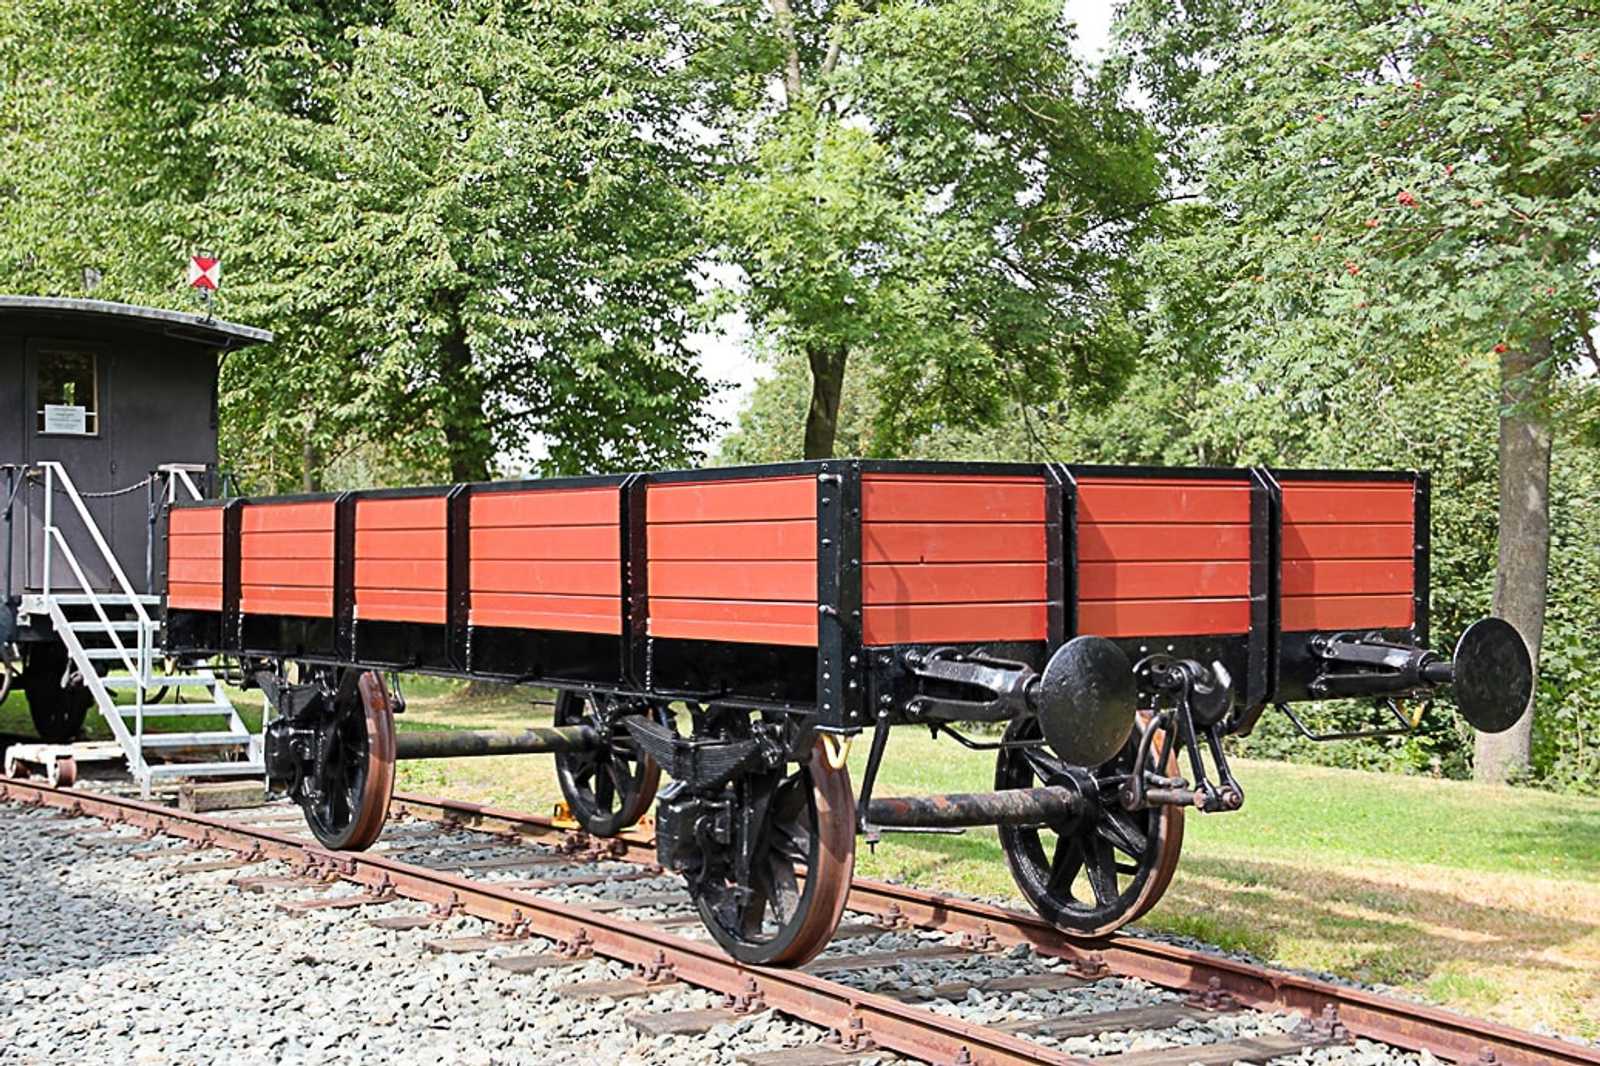 Der Niederbordwagen 46a hat im Sommer neue Bretter und einen neuen Anstrich bekommen. Anfang September präsentierte er sich im Eisenbahnmuseum Schwarzenberg aber
noch ohne Beschriftung.